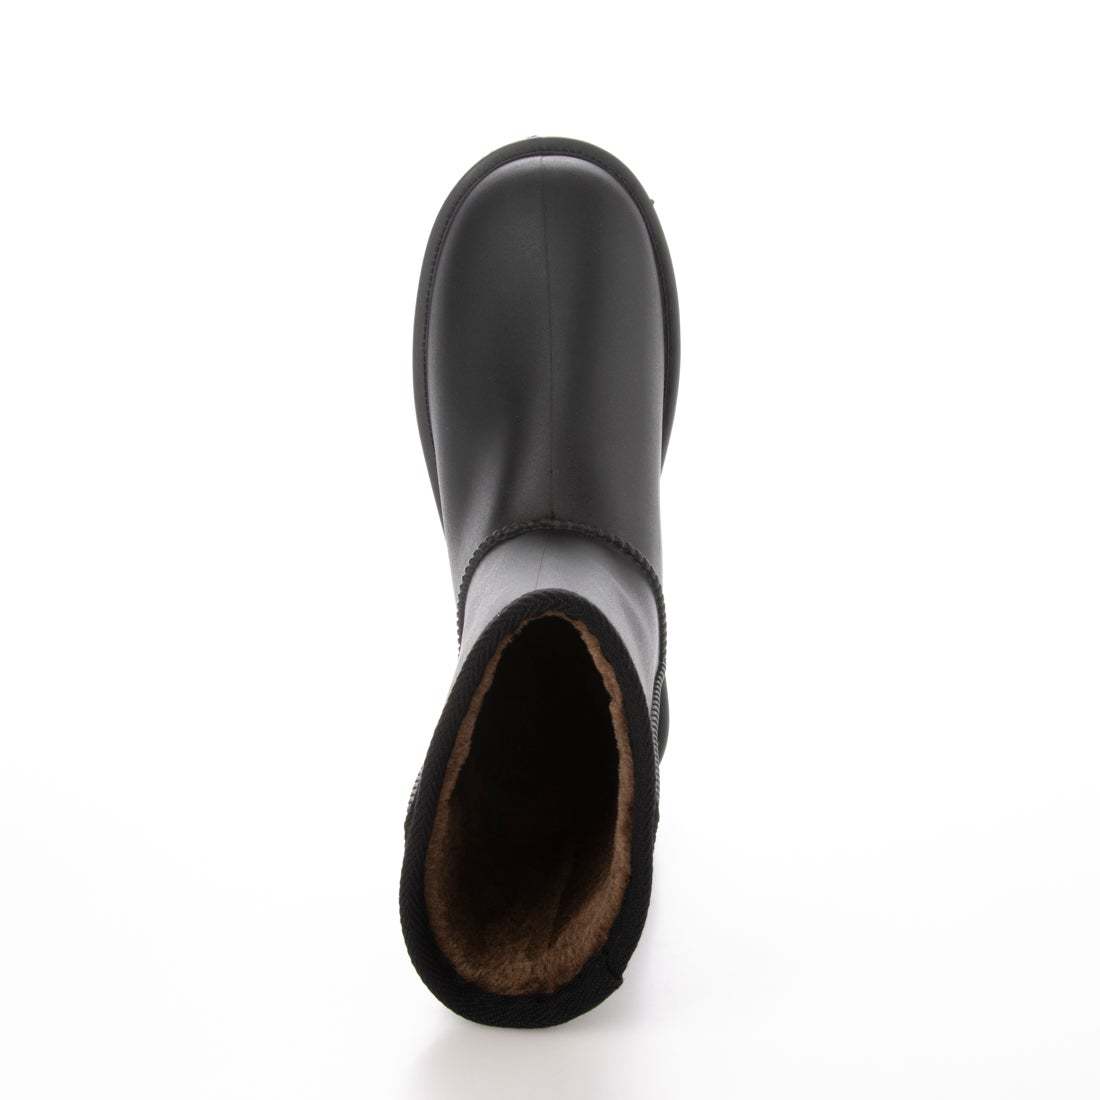 防寒ブーツ　ムートンブーツ　防寒防水ブーツ　新品『21076-BLK-240』24.0cm　メンズ、レディース、キッズのファミリーサイズ。